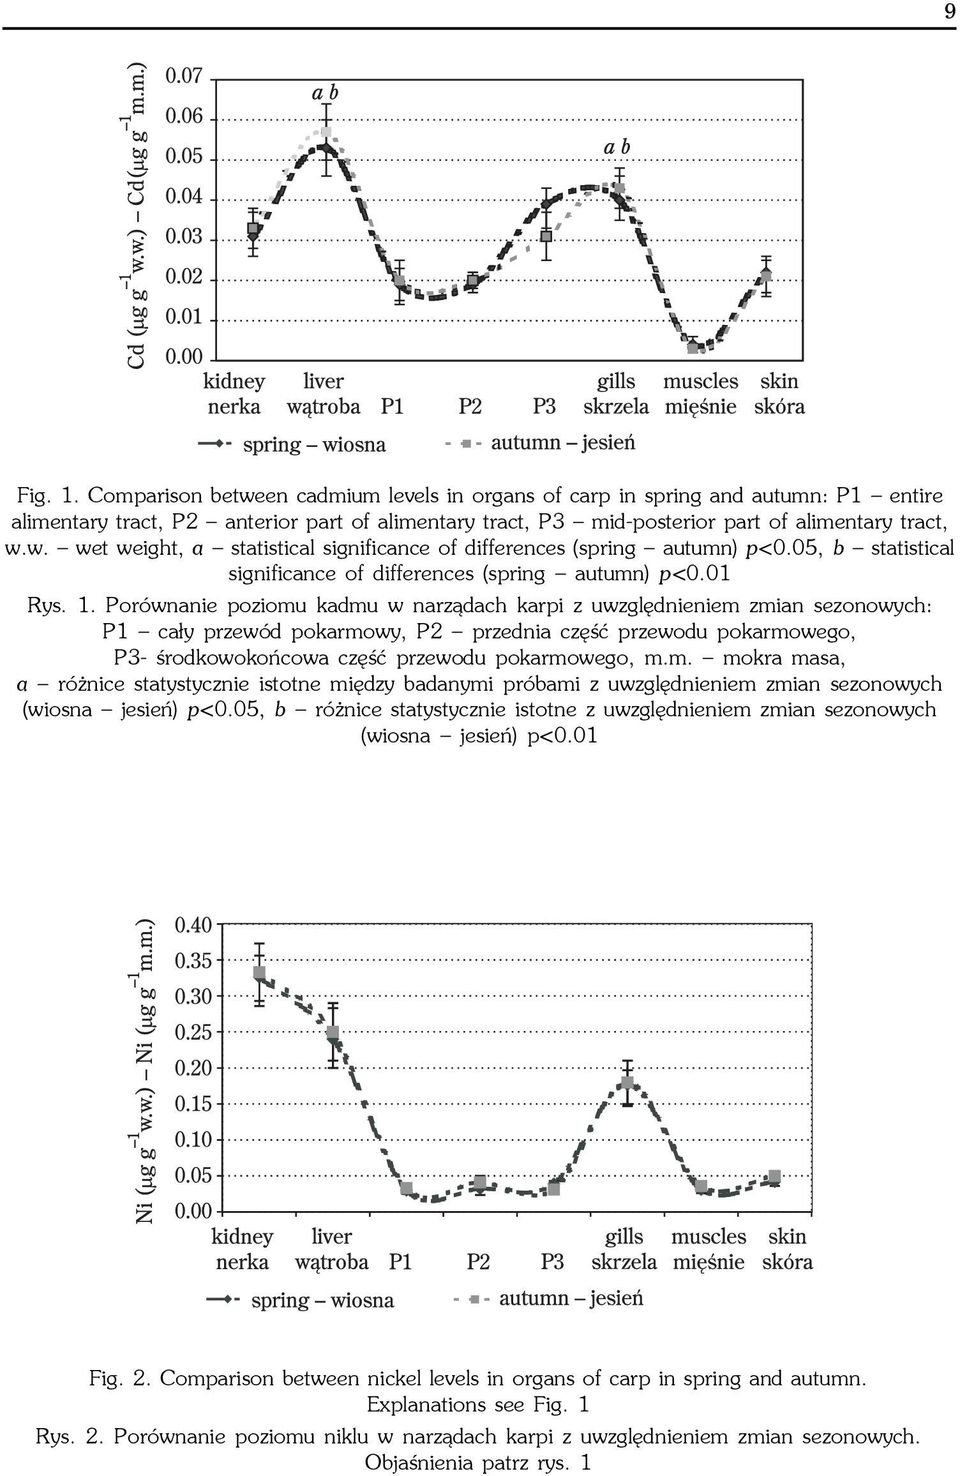 Porównanie poziomu kadmu w narz¹dach karpi z uwzglêdnieniem zmian sezonowych: P1 ca³y przewód pokarmowy, P2 przednia czêœæ przewodu pokarmowego, P3- œrodkowokoñcowa czêœæ przewodu pokarmowego, m.m. mokra masa, a ró nice statystycznie istotne miêdzy badanymi próbami z uwzglêdnieniem zmian sezonowych (wiosna jesieñ) p<0.